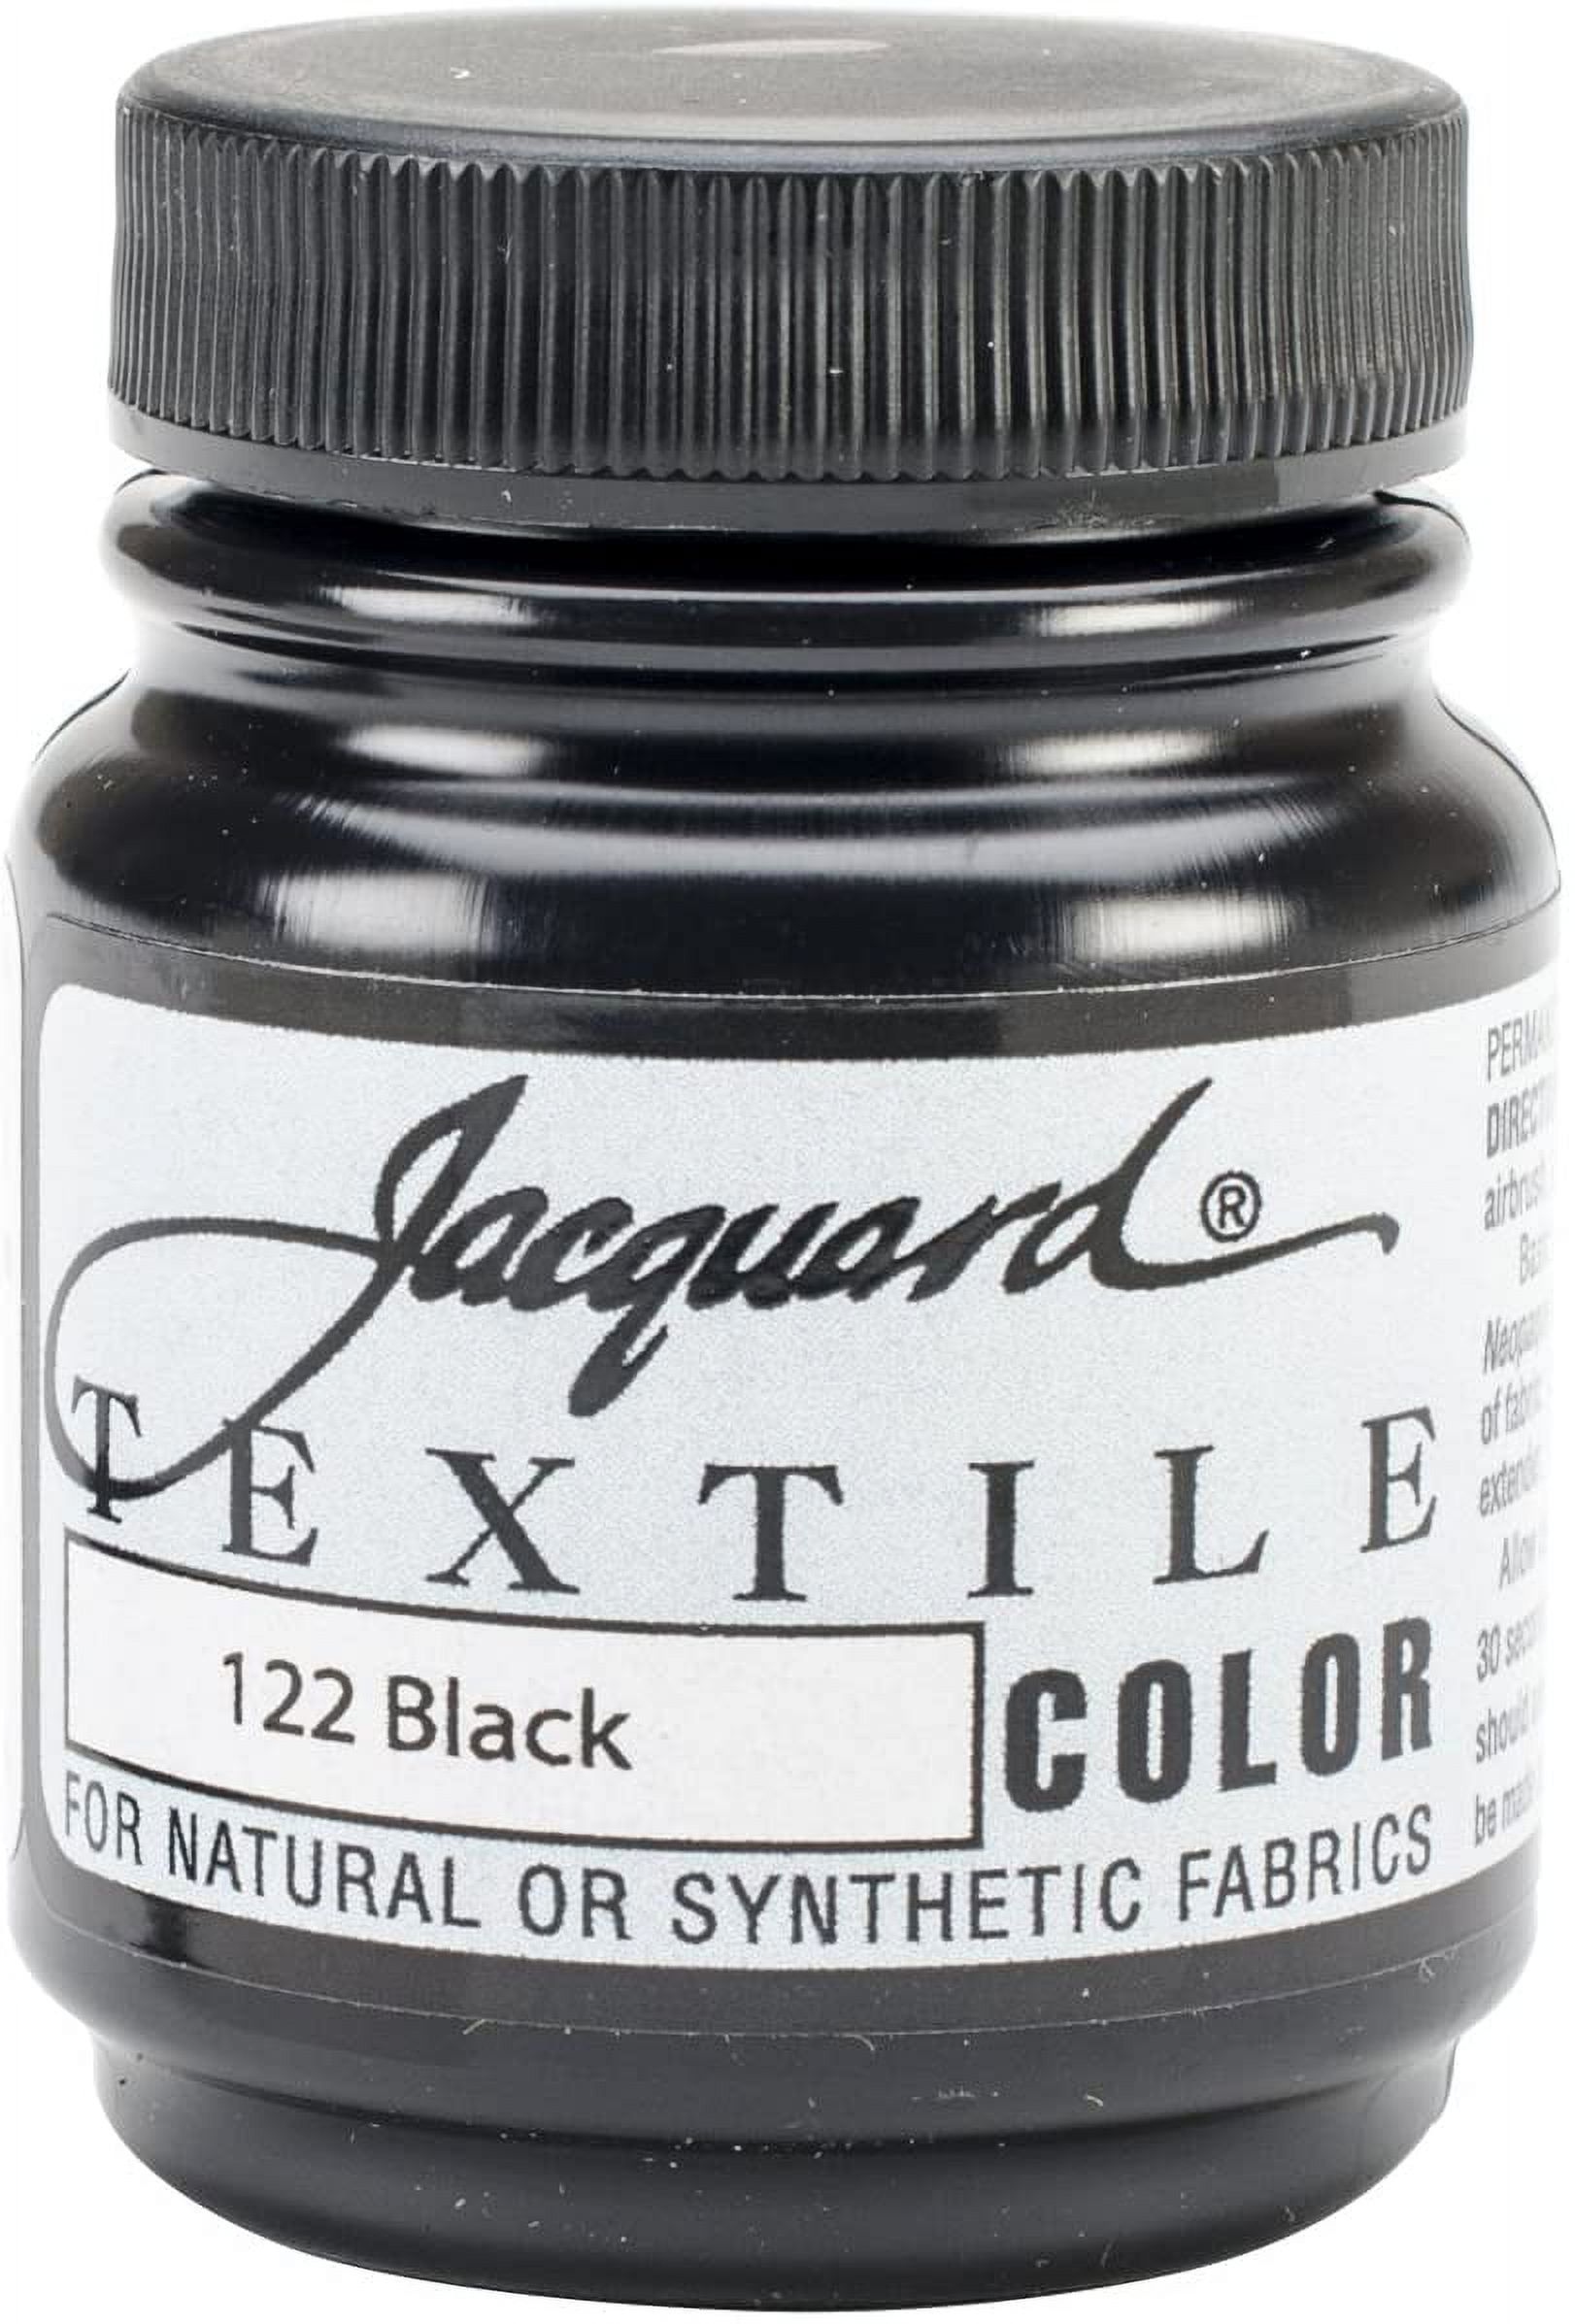 Jacquard Textile Color Fabric Paint, #122 Black, 2.25 Oz